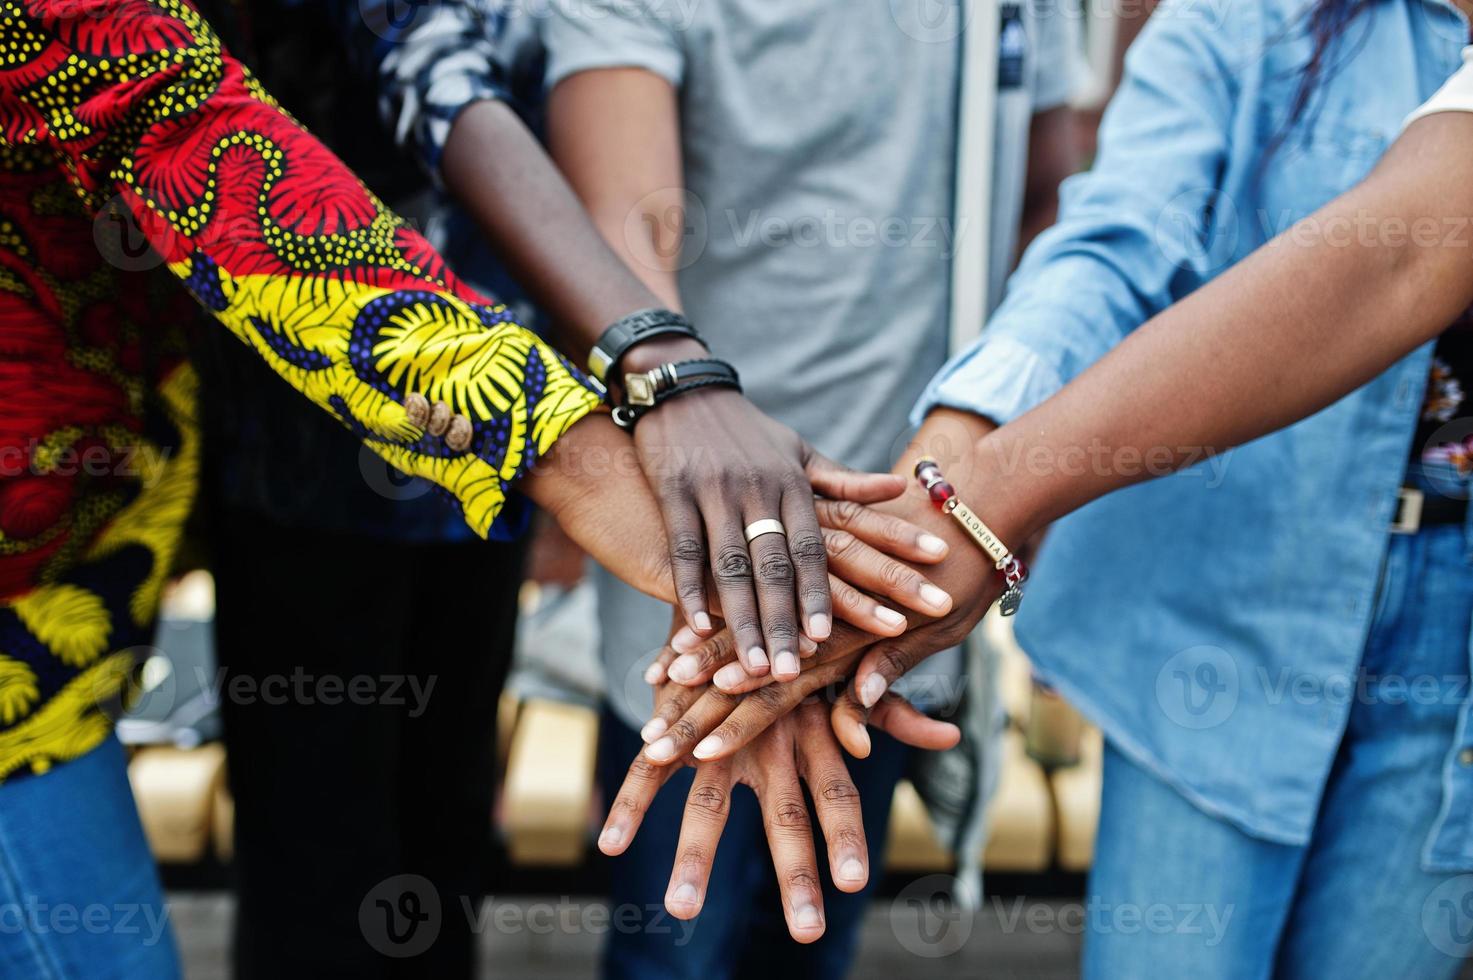 gruppo di cinque studenti universitari africani che trascorrono del tempo insieme nel campus nel cortile dell'università. amici afro neri che studiano. tema dell'educazione. mani sulle mani. foto